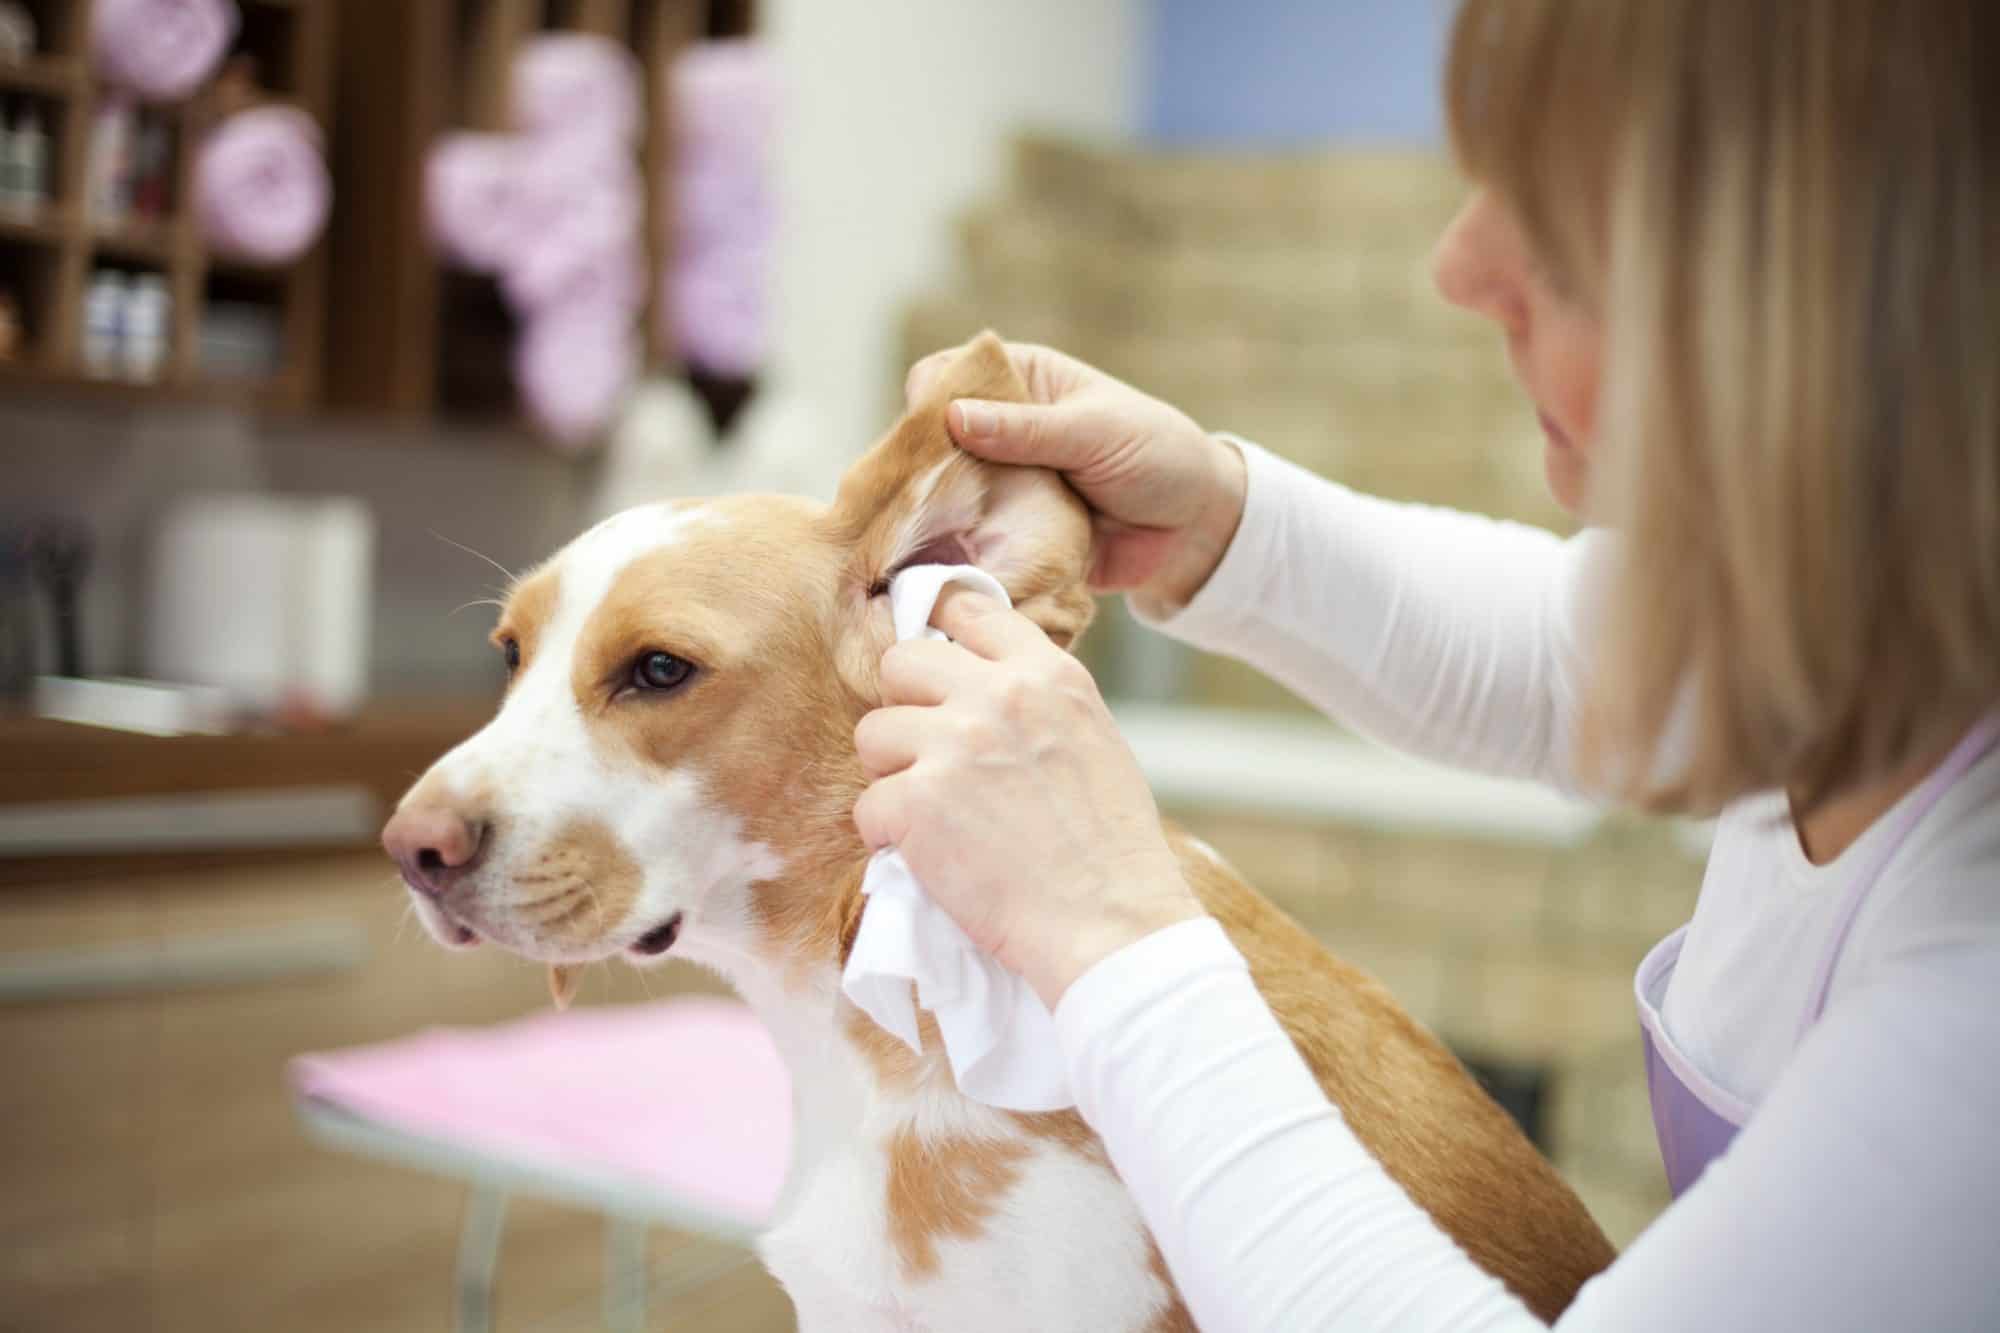 Auburn, CA dog getting ear examined.